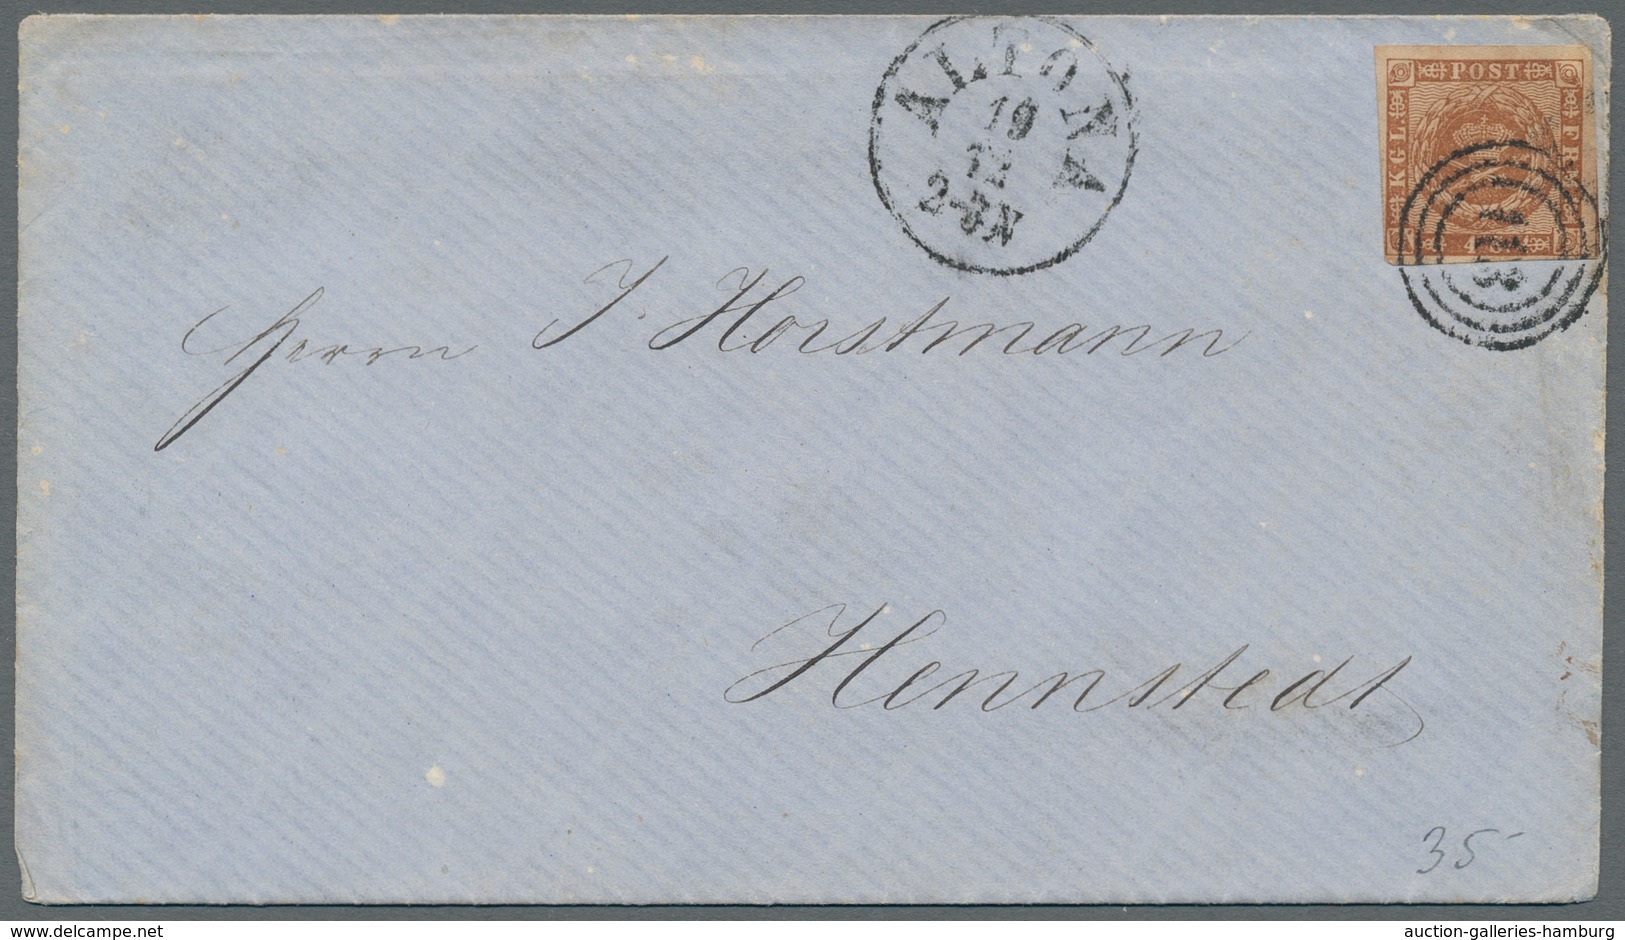 Schleswig-Holstein - Marken und Briefe: 1850-1862 ca., 9 Briefe ab Dänemark Nr. 1, plus eine lose Ma